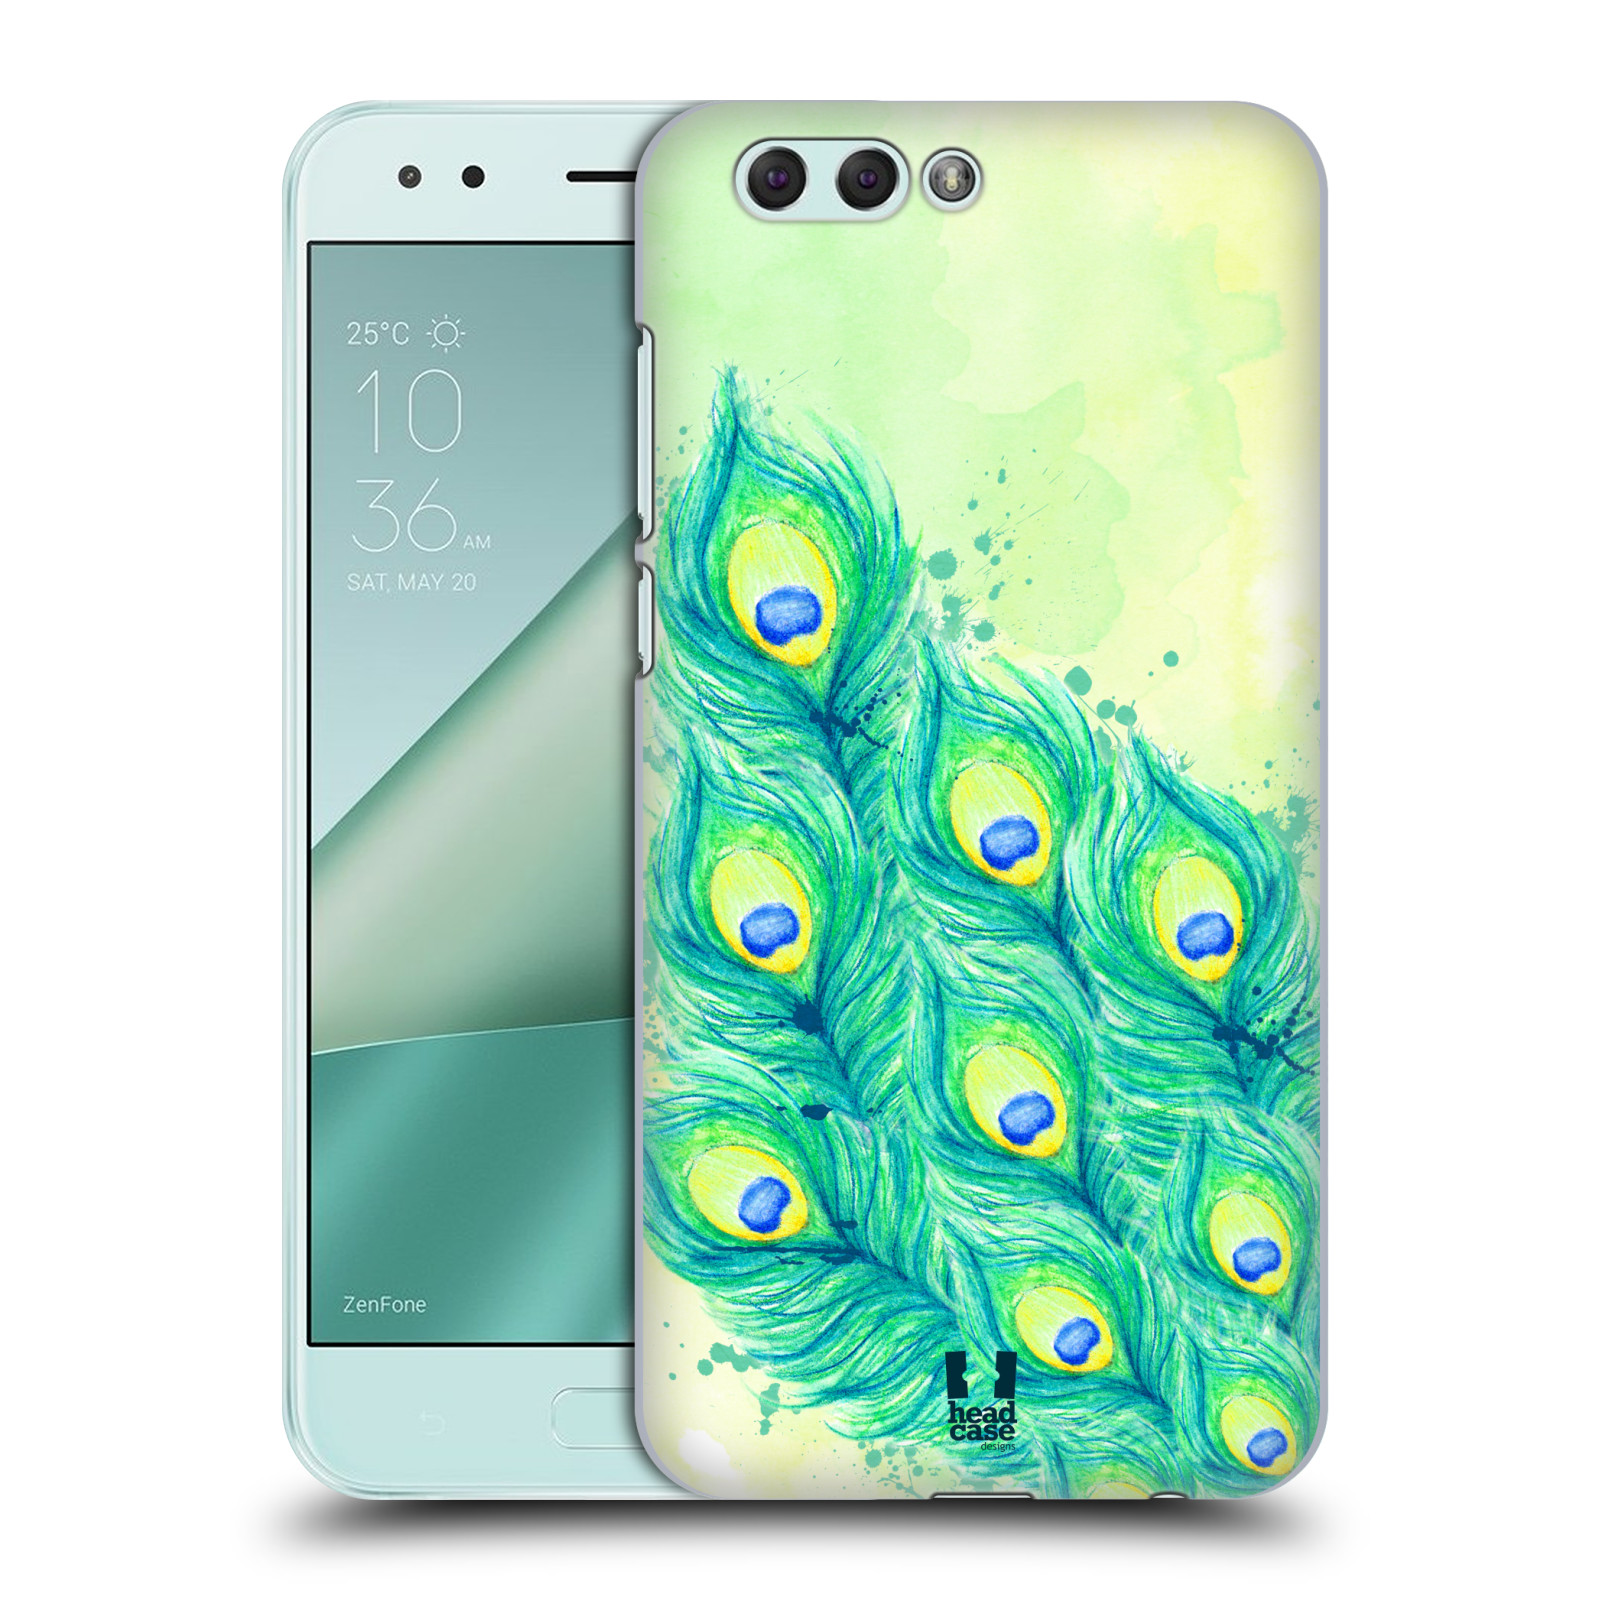 HEAD CASE plastový obal na mobil Asus Zenfone 4 ZE554KL vzor Paví pírka barevná MODRÁ A ZELENÁ